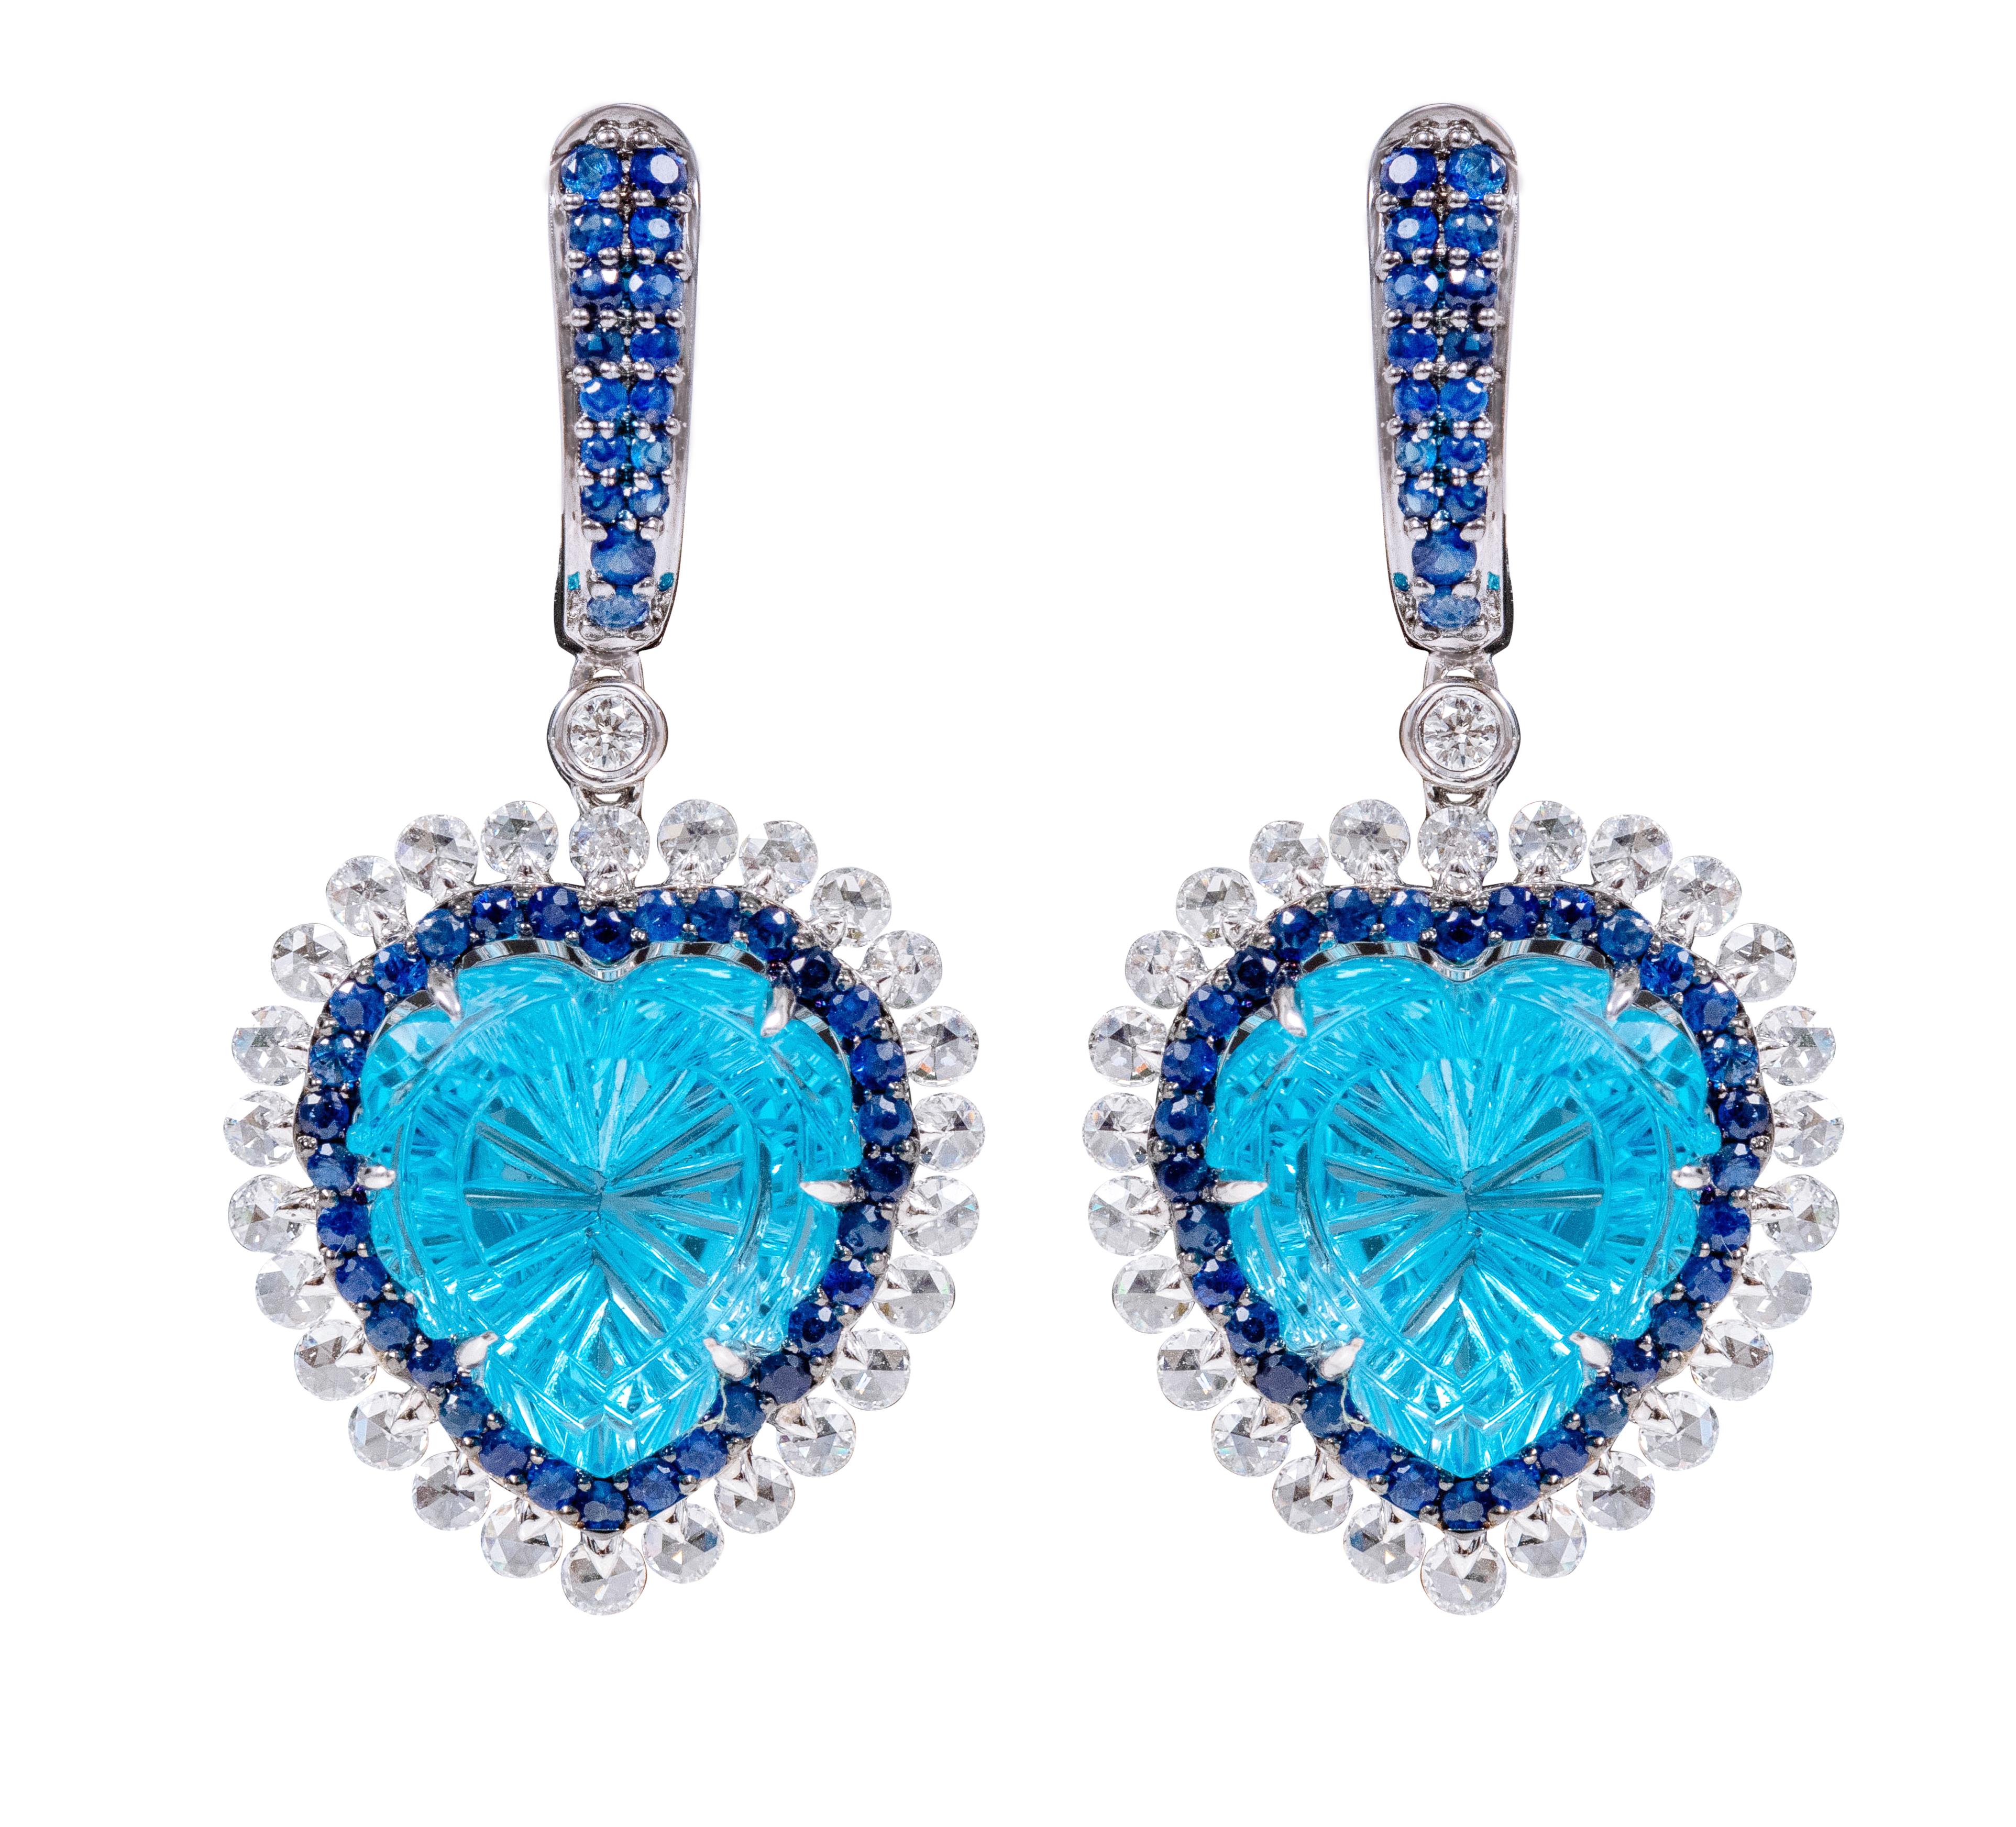 Boucles d'oreilles en forme de cœur en or 18 carats avec diamants de 23,67 carats, topaze bleue et saphirs